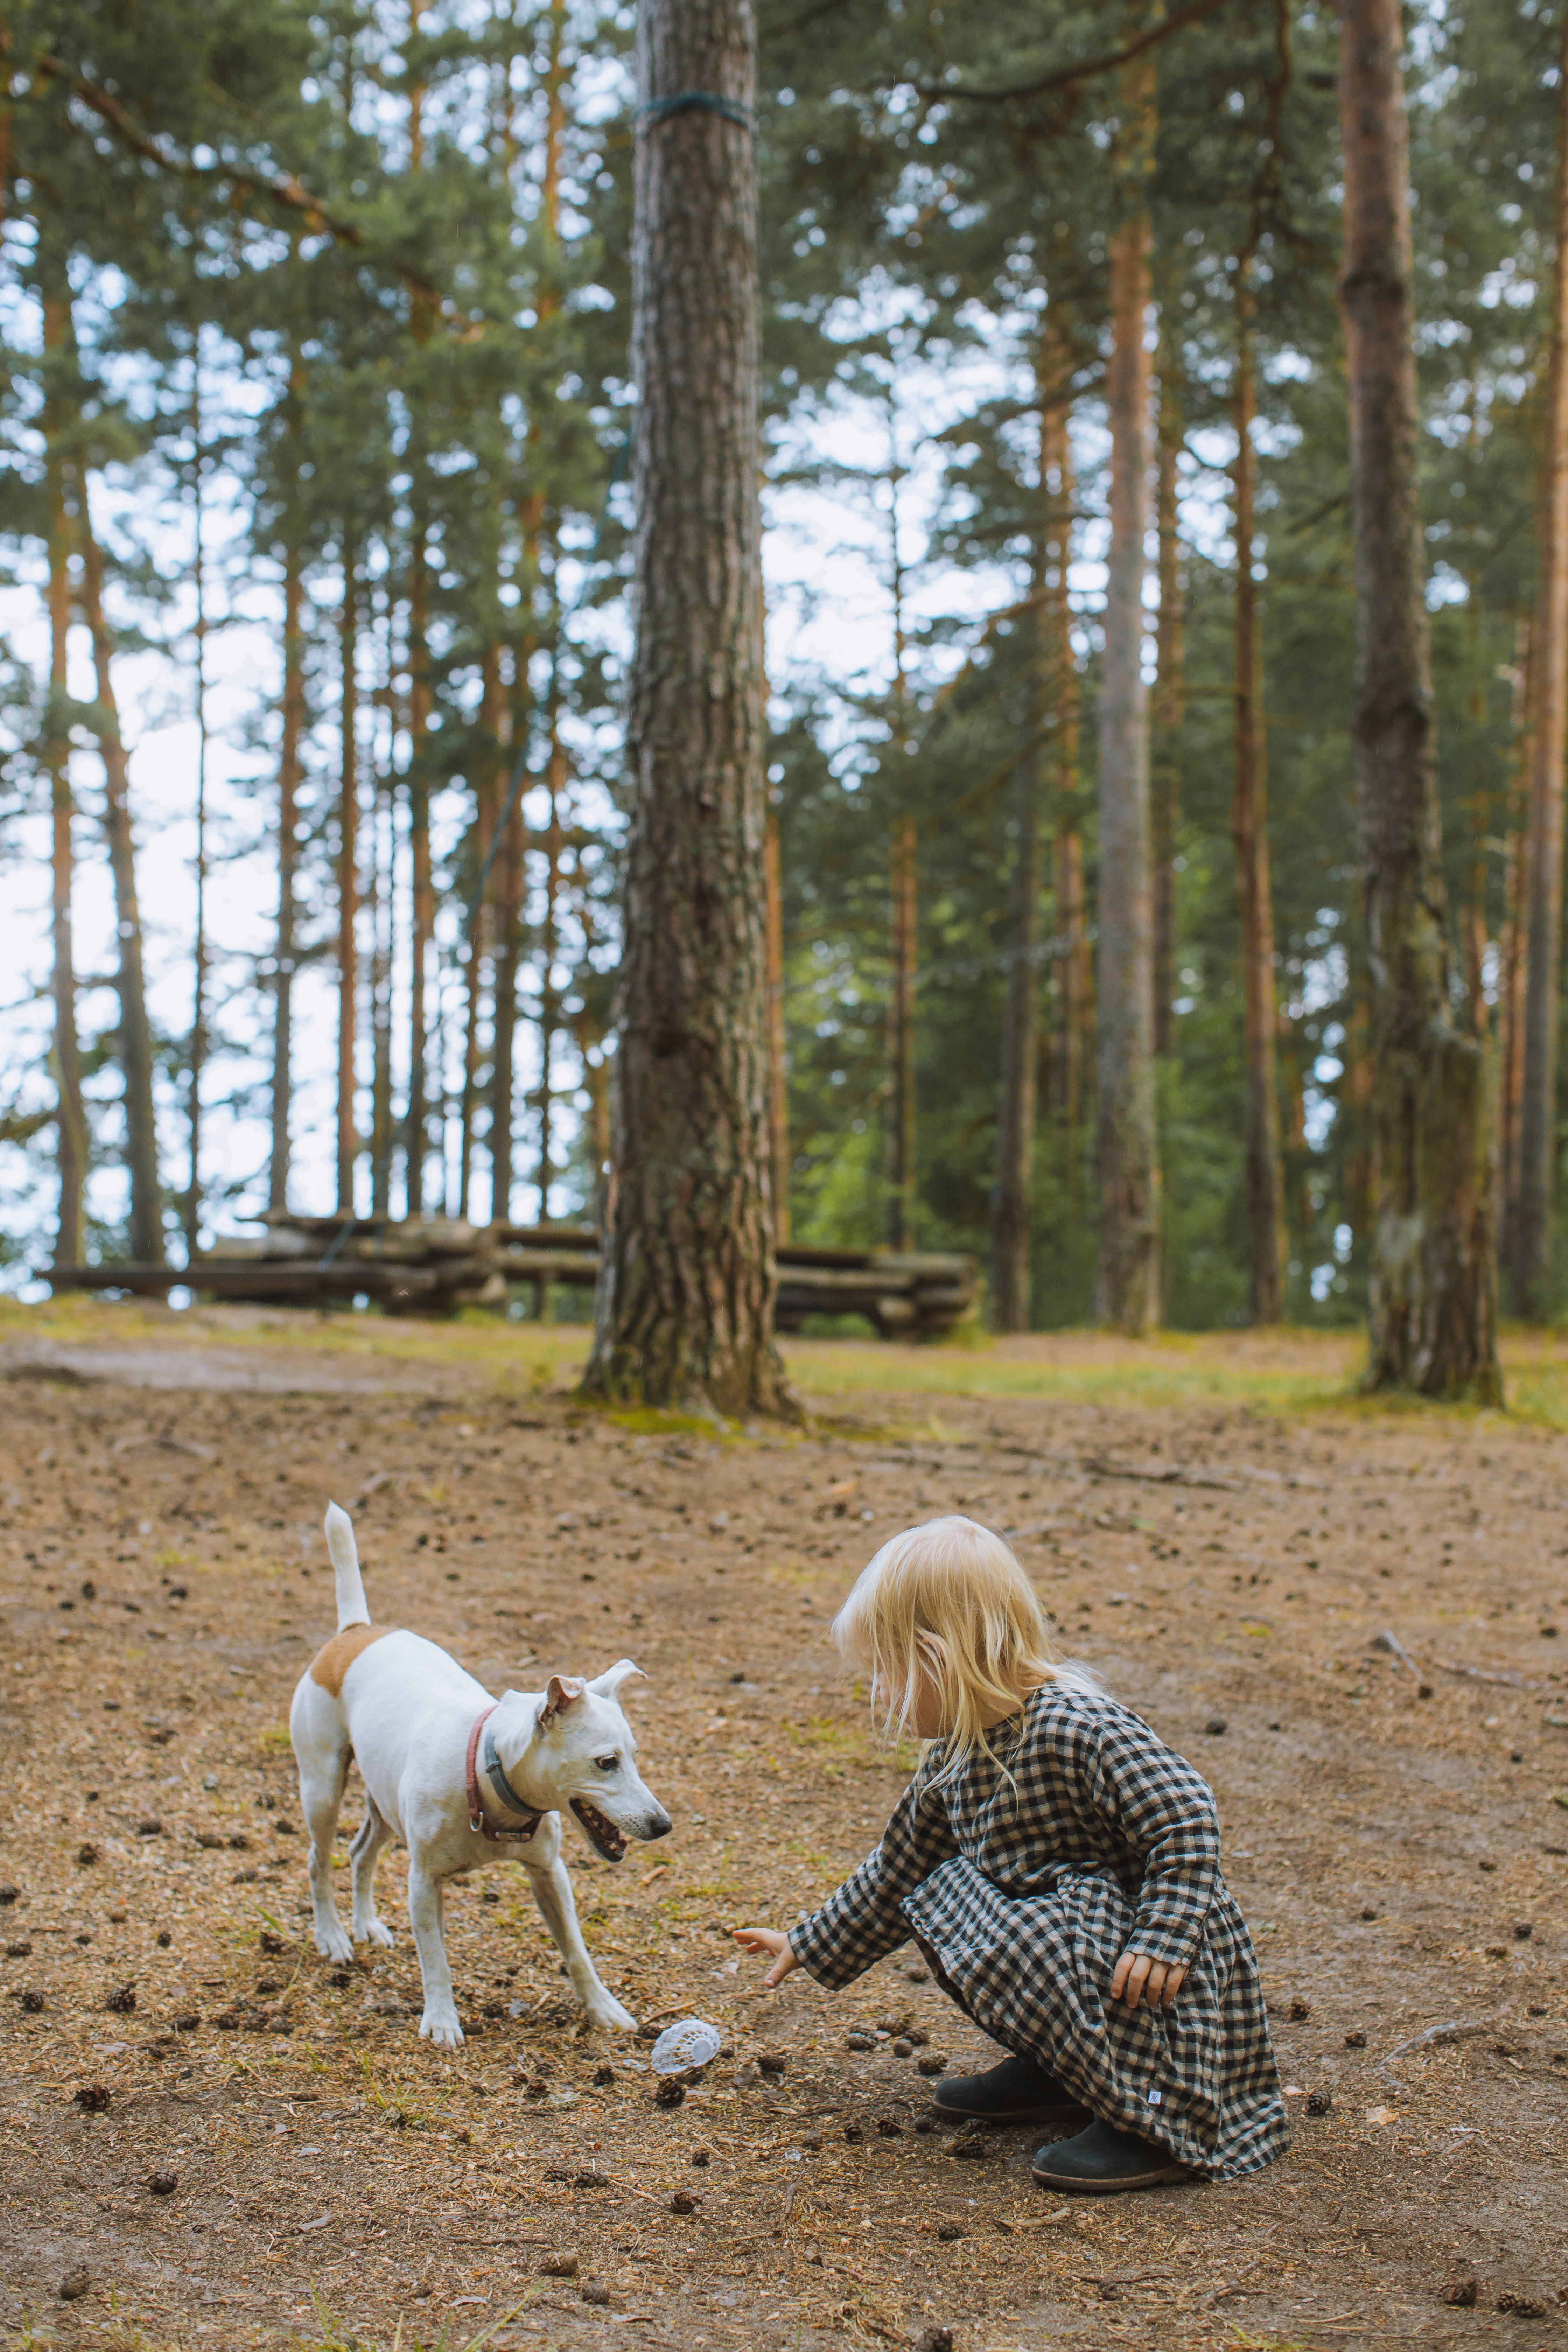 Una niña juega con su perro en un parque. | Foto: Pexels